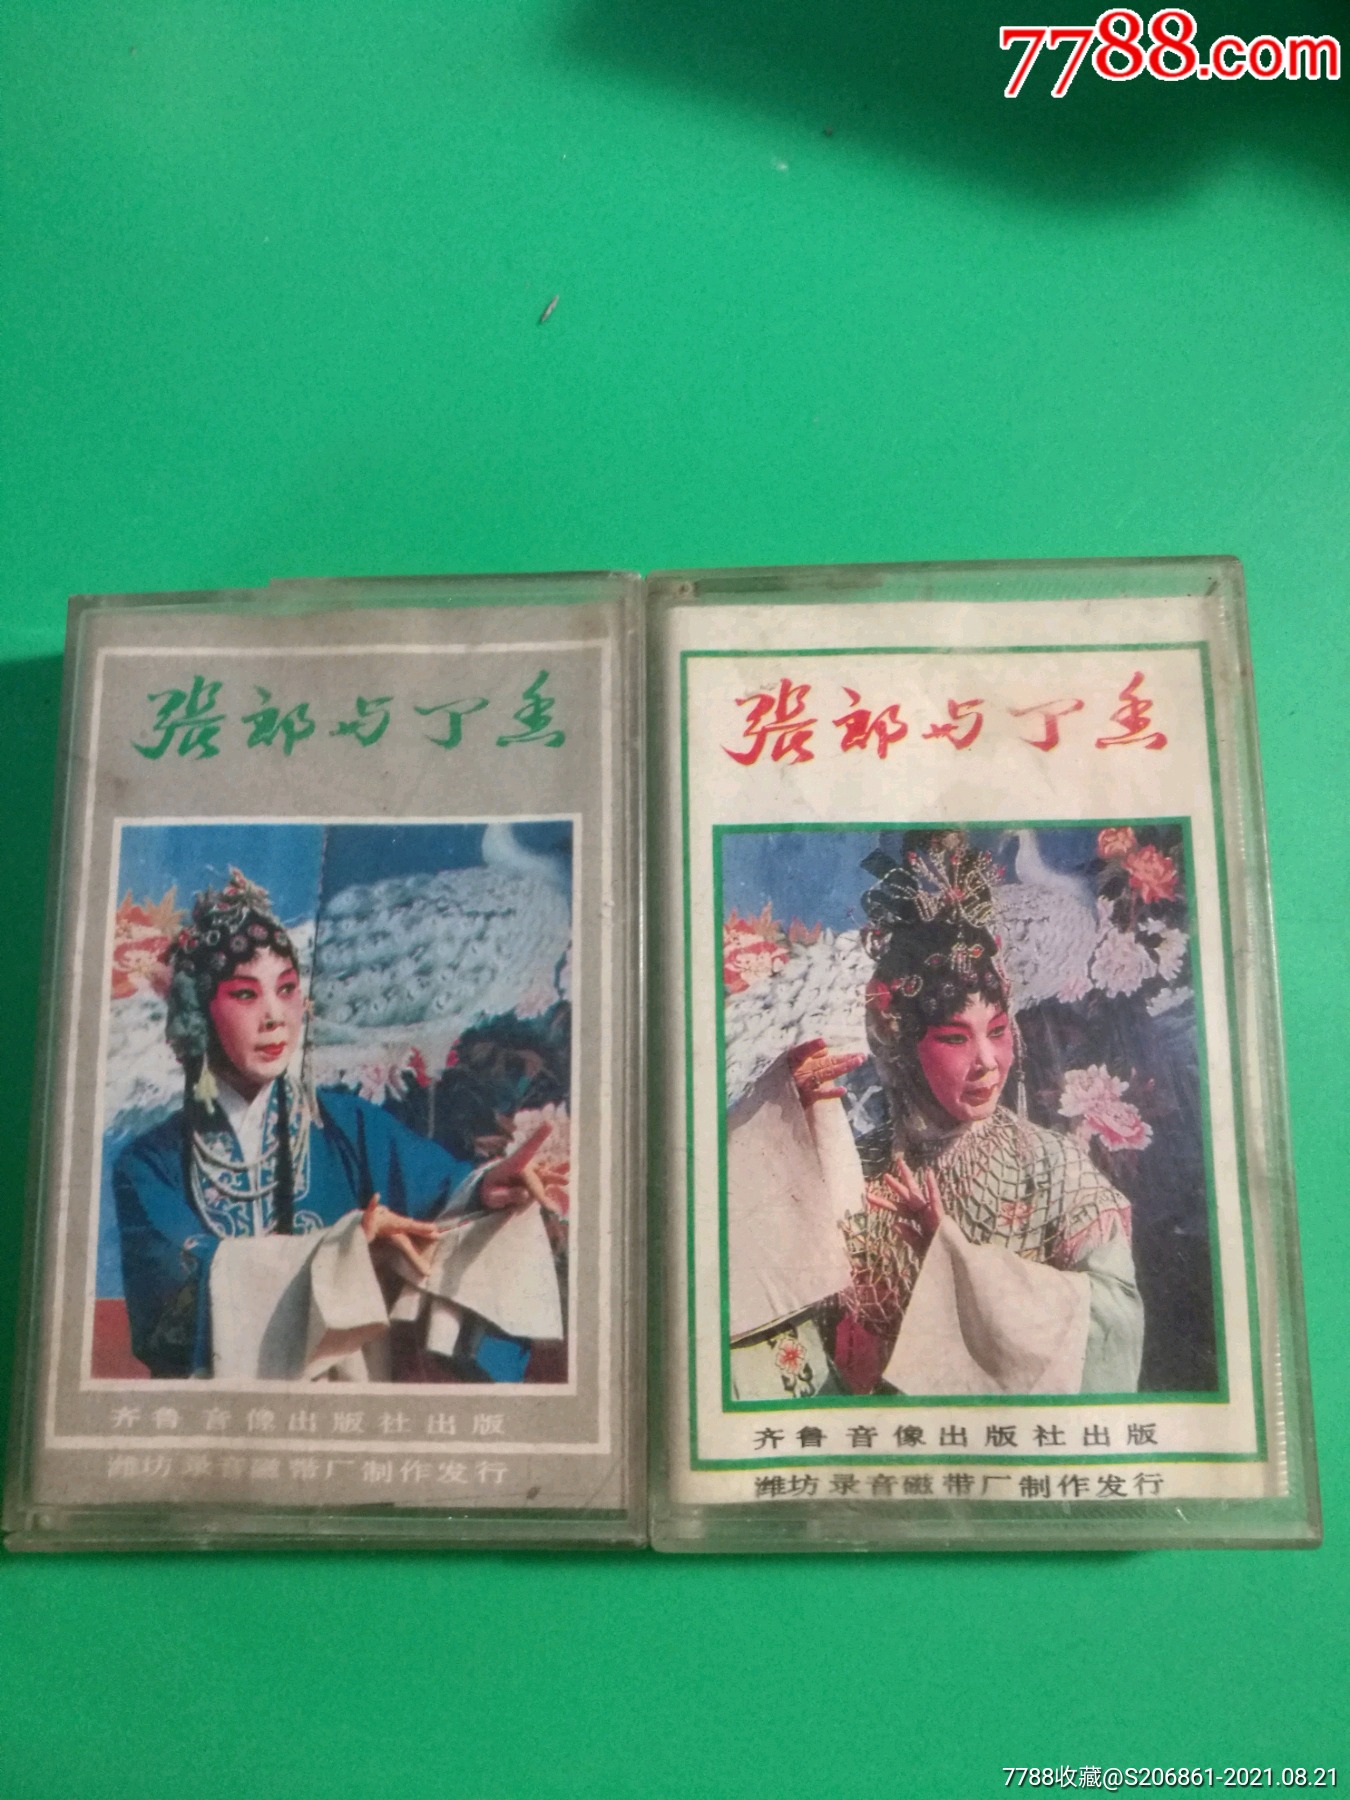 柳琴戏《张郎与丁香》上下集磁带,齐鲁音像出版社出版